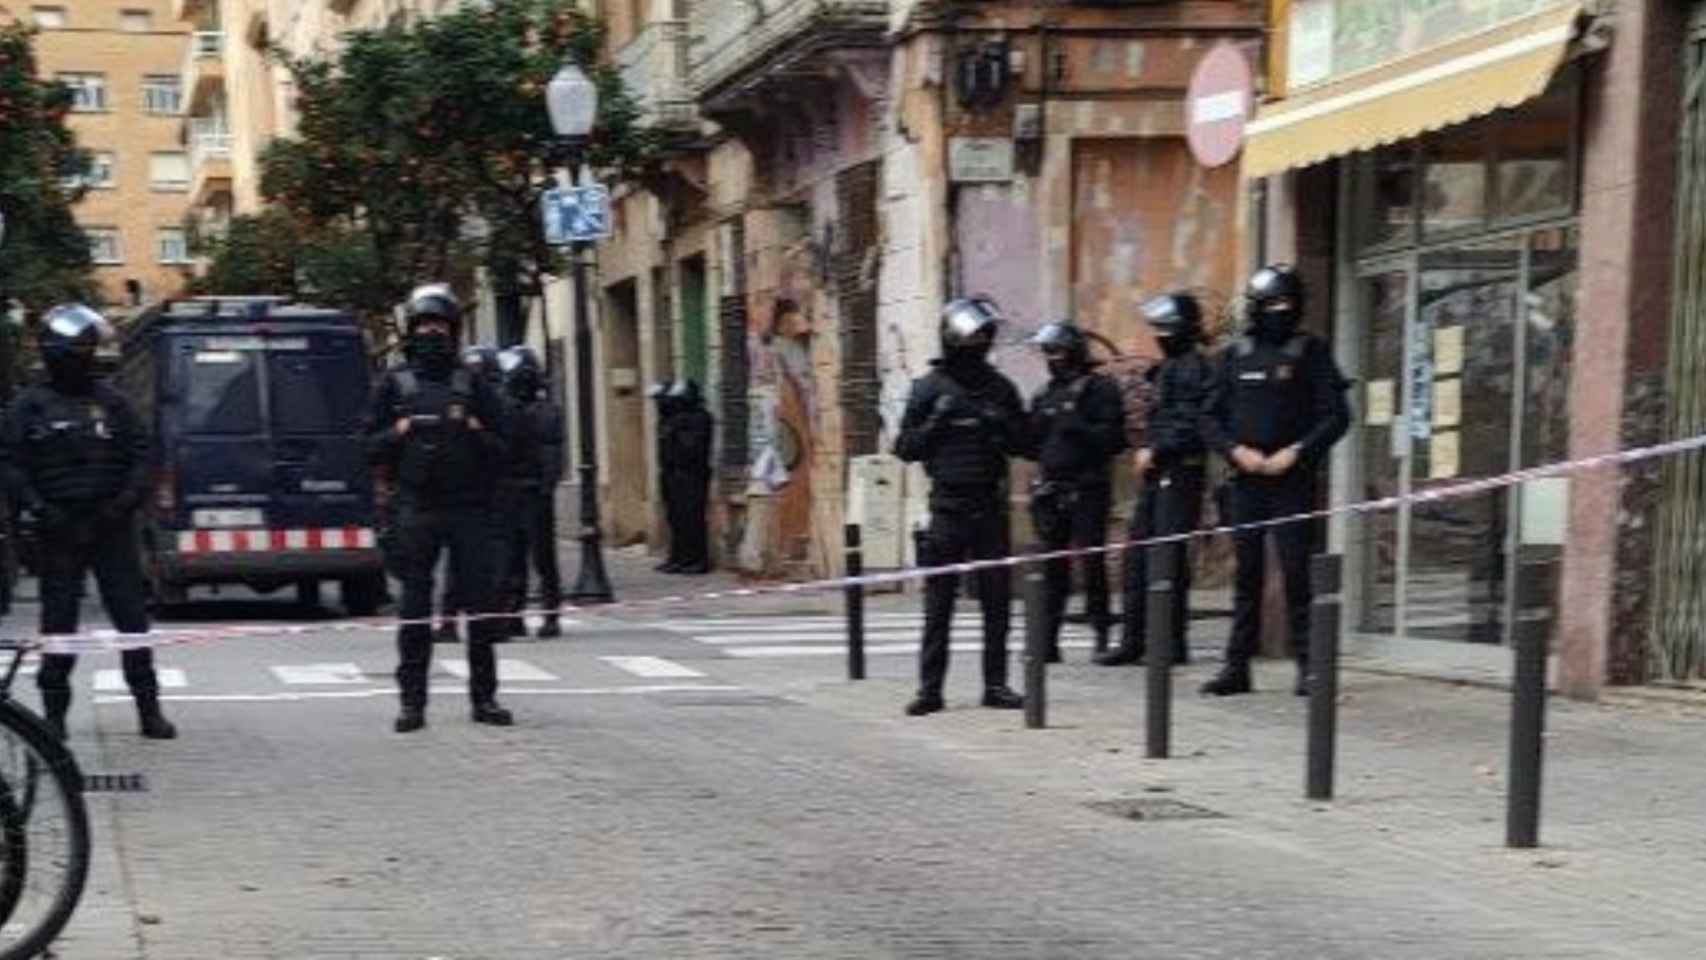 Despliegue de Mossos d'Esquasdra durante el desalojo de una vivienda ocupada en Sant Andreu / TSUNAMI REPRESIU (TWITTER)